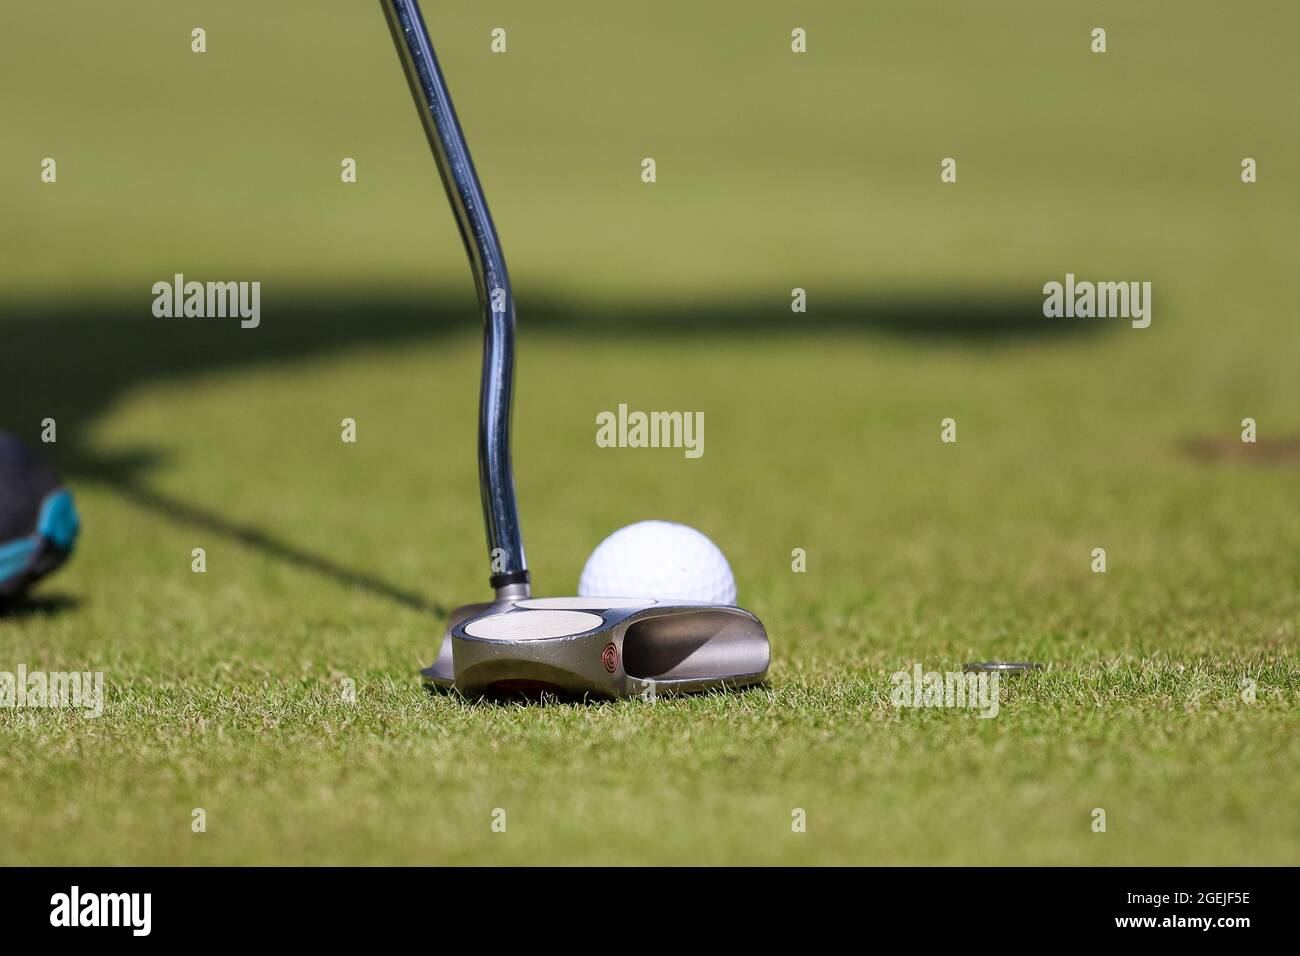 Partie basse de l'homme jouant au golf à l'aire d'échauffement sur un terrain vert Banque D'Images